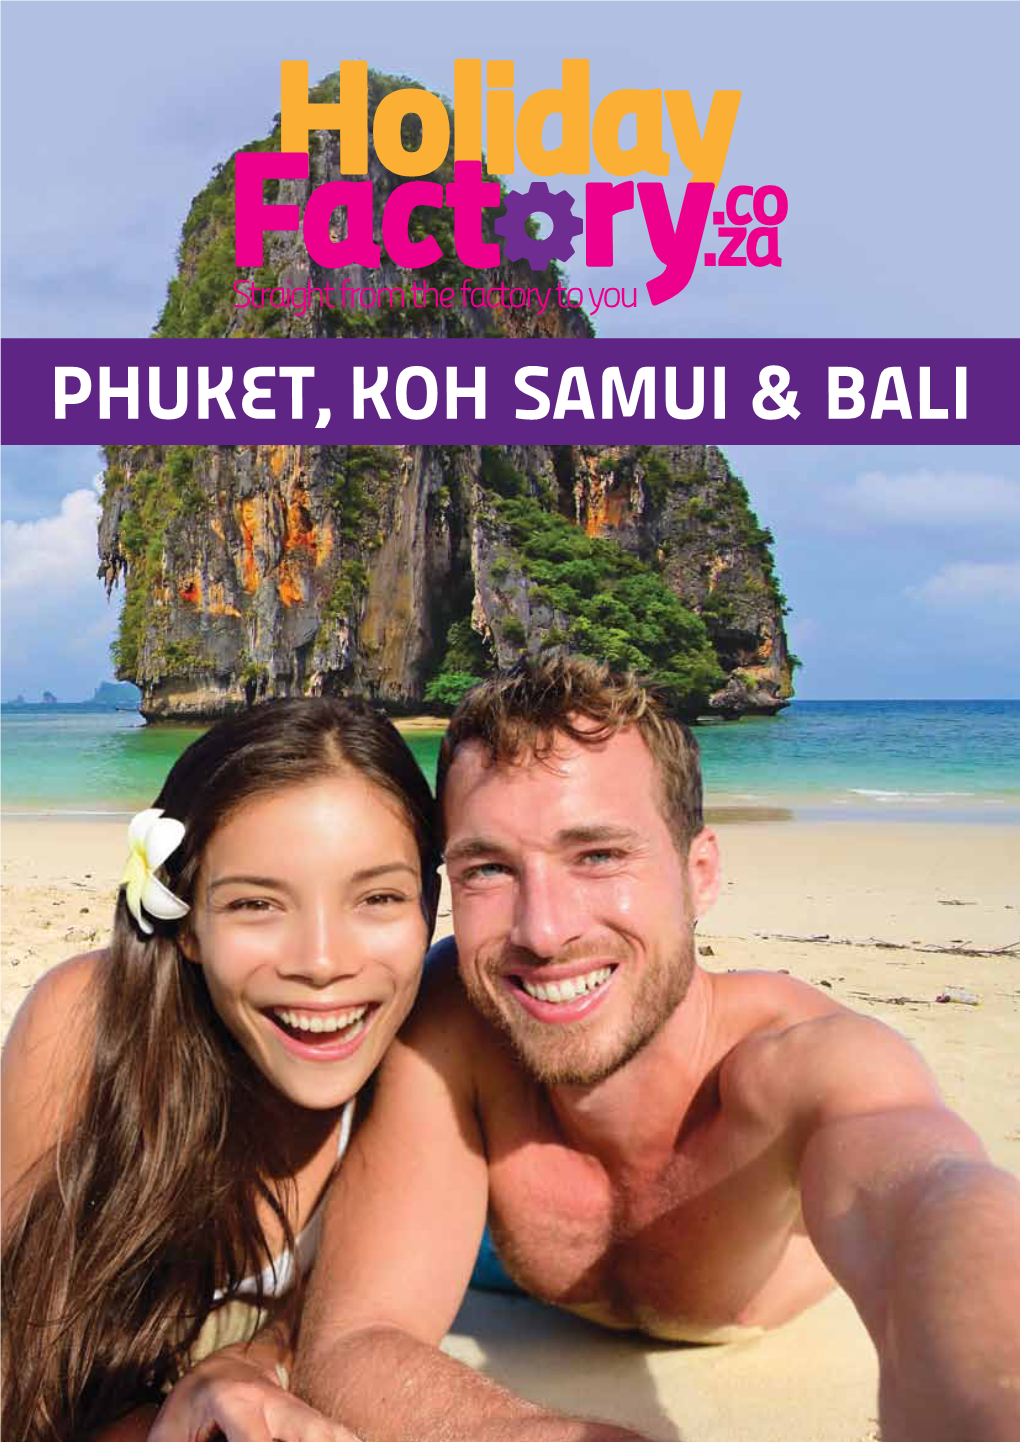 Phuket, Koh Samui & Bali